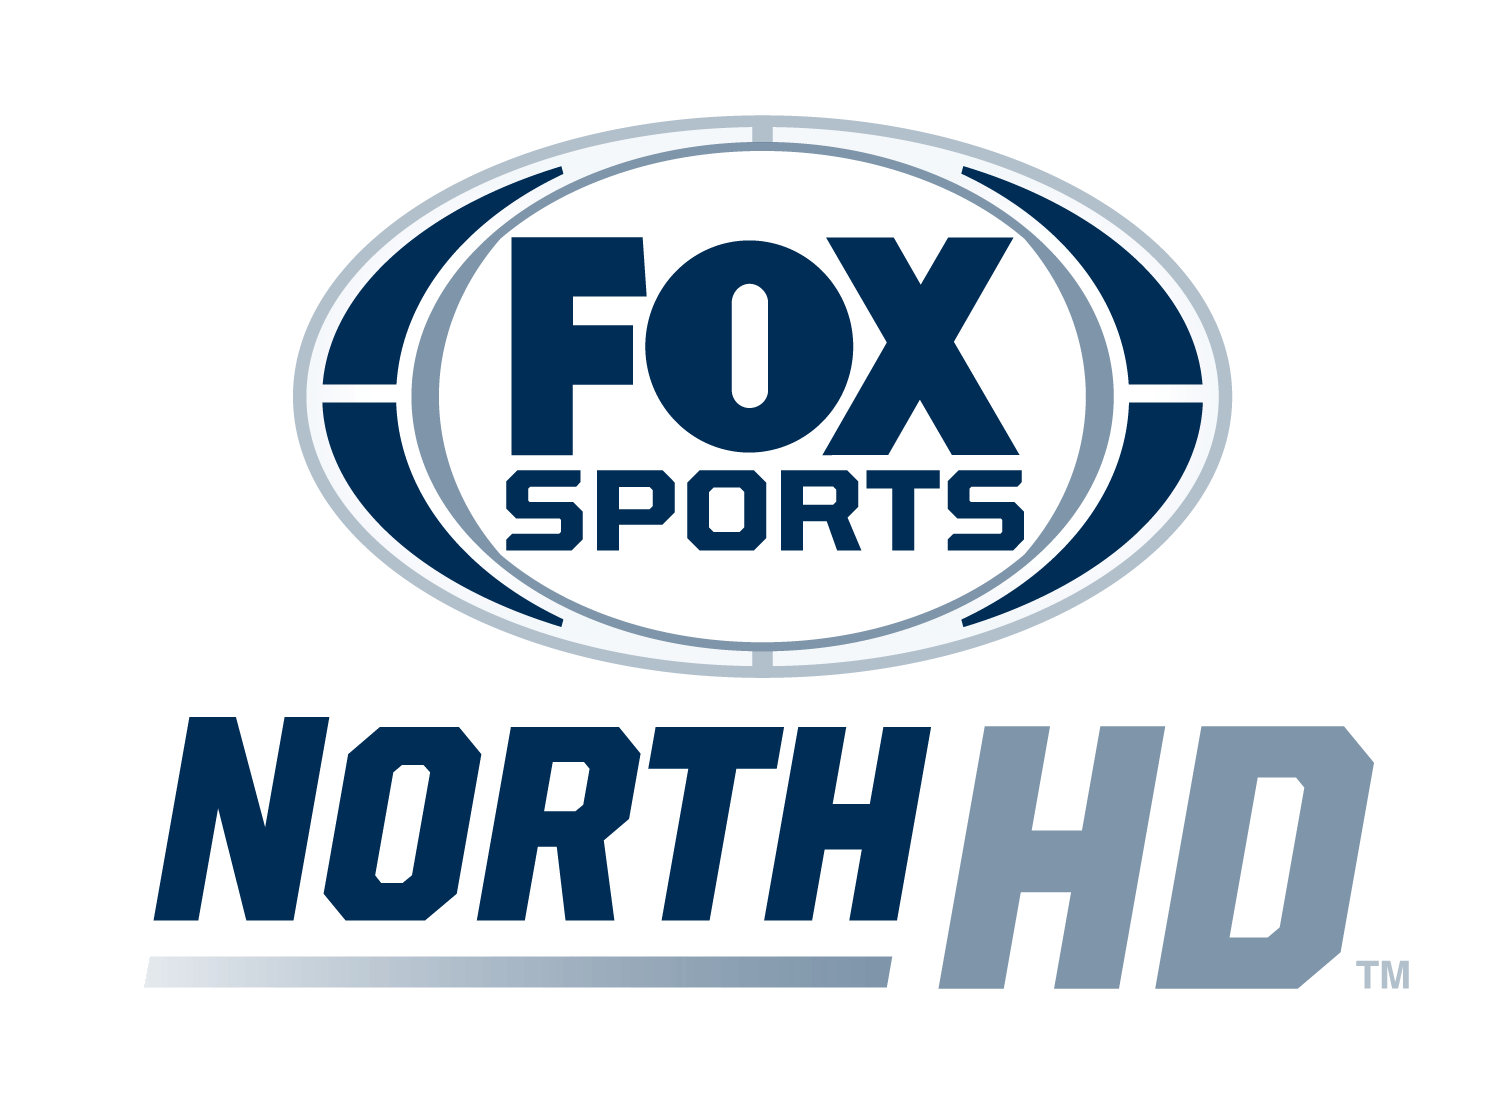 Fox Sports North Plus HD